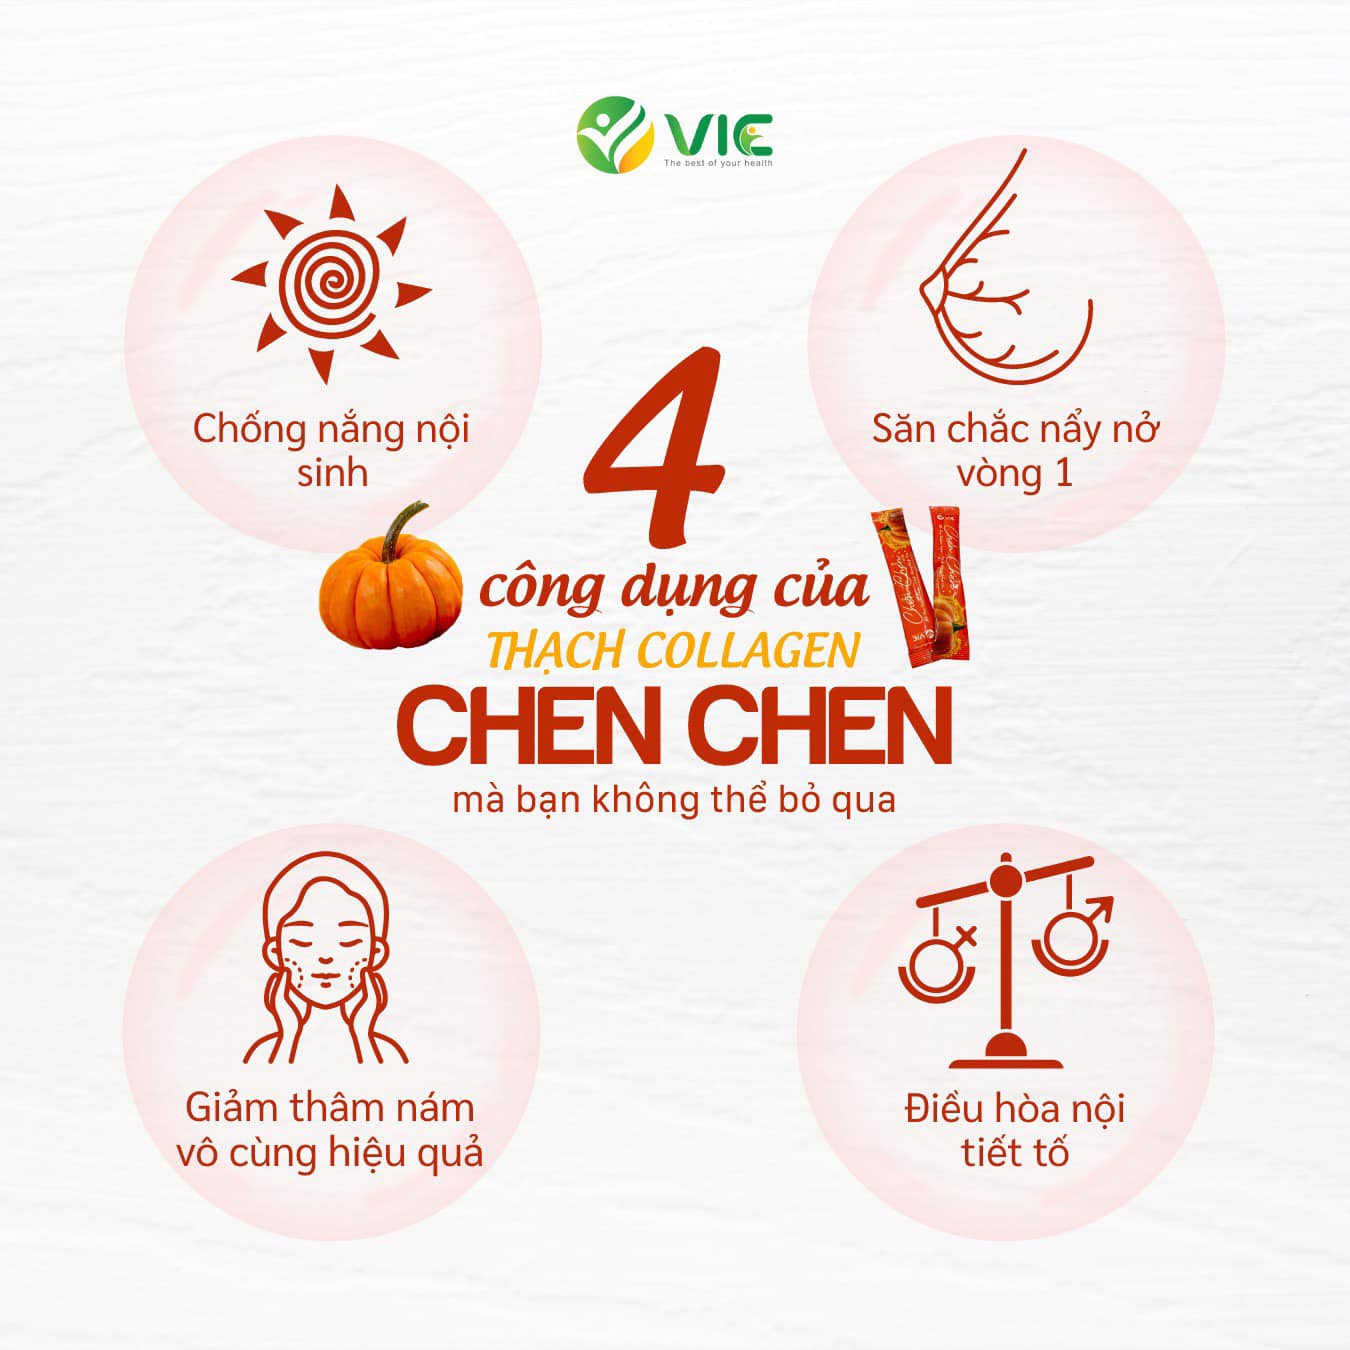 Thạch bí đỏ Chen Chen dạng hộp 14 gói Vic Organic Chính Hãng - CHENCHEN01